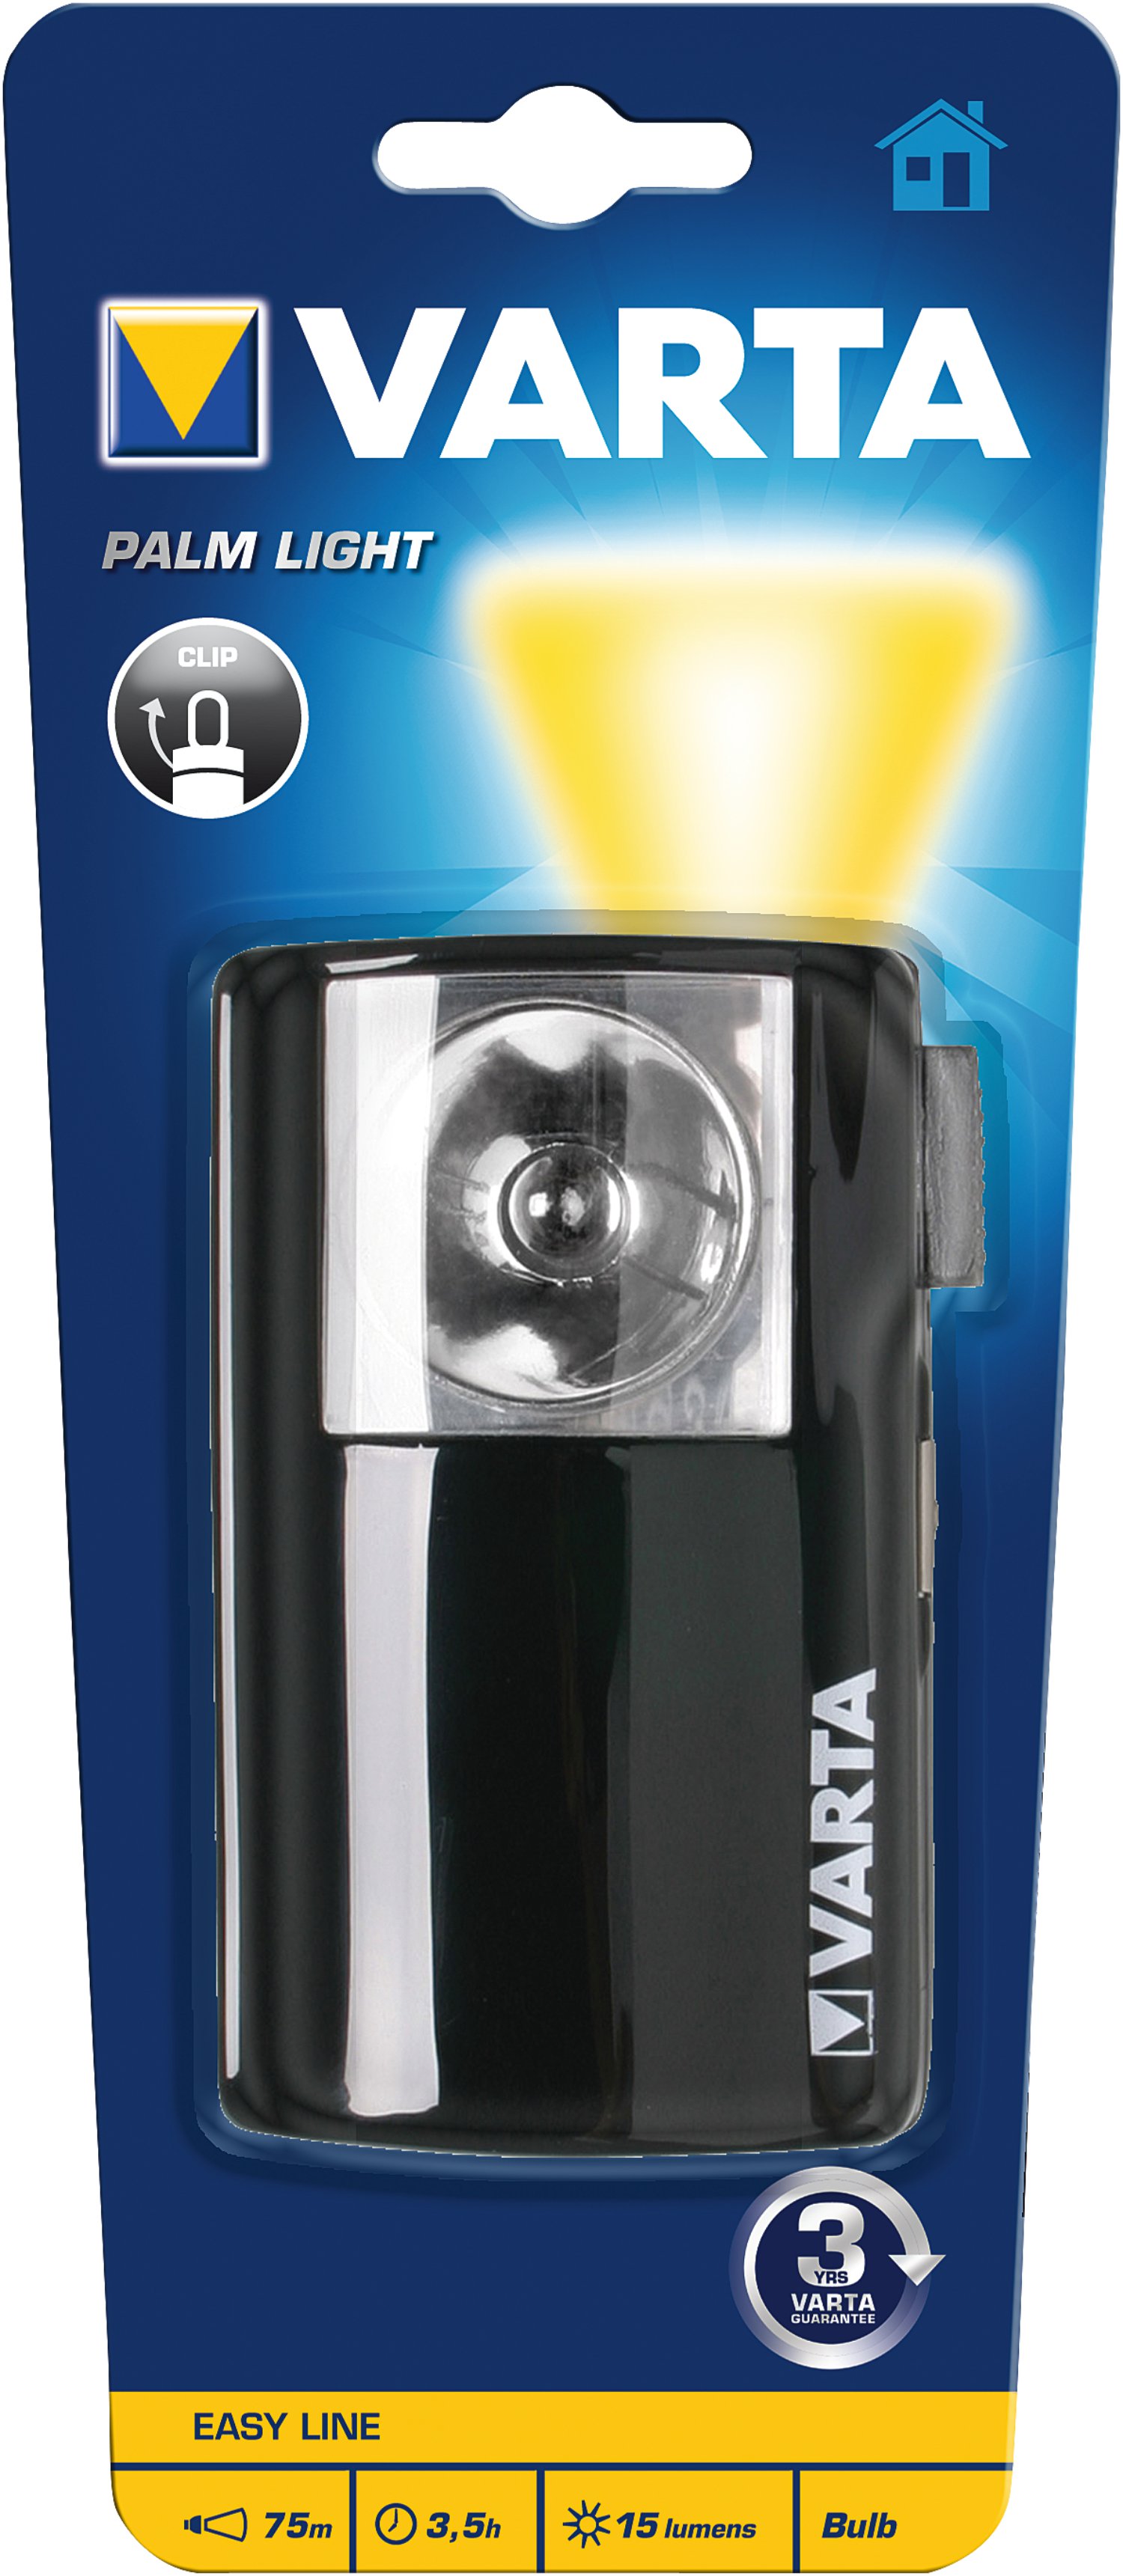 VARTA Taschenlampe Palm Light 3R12 ohne Batterien